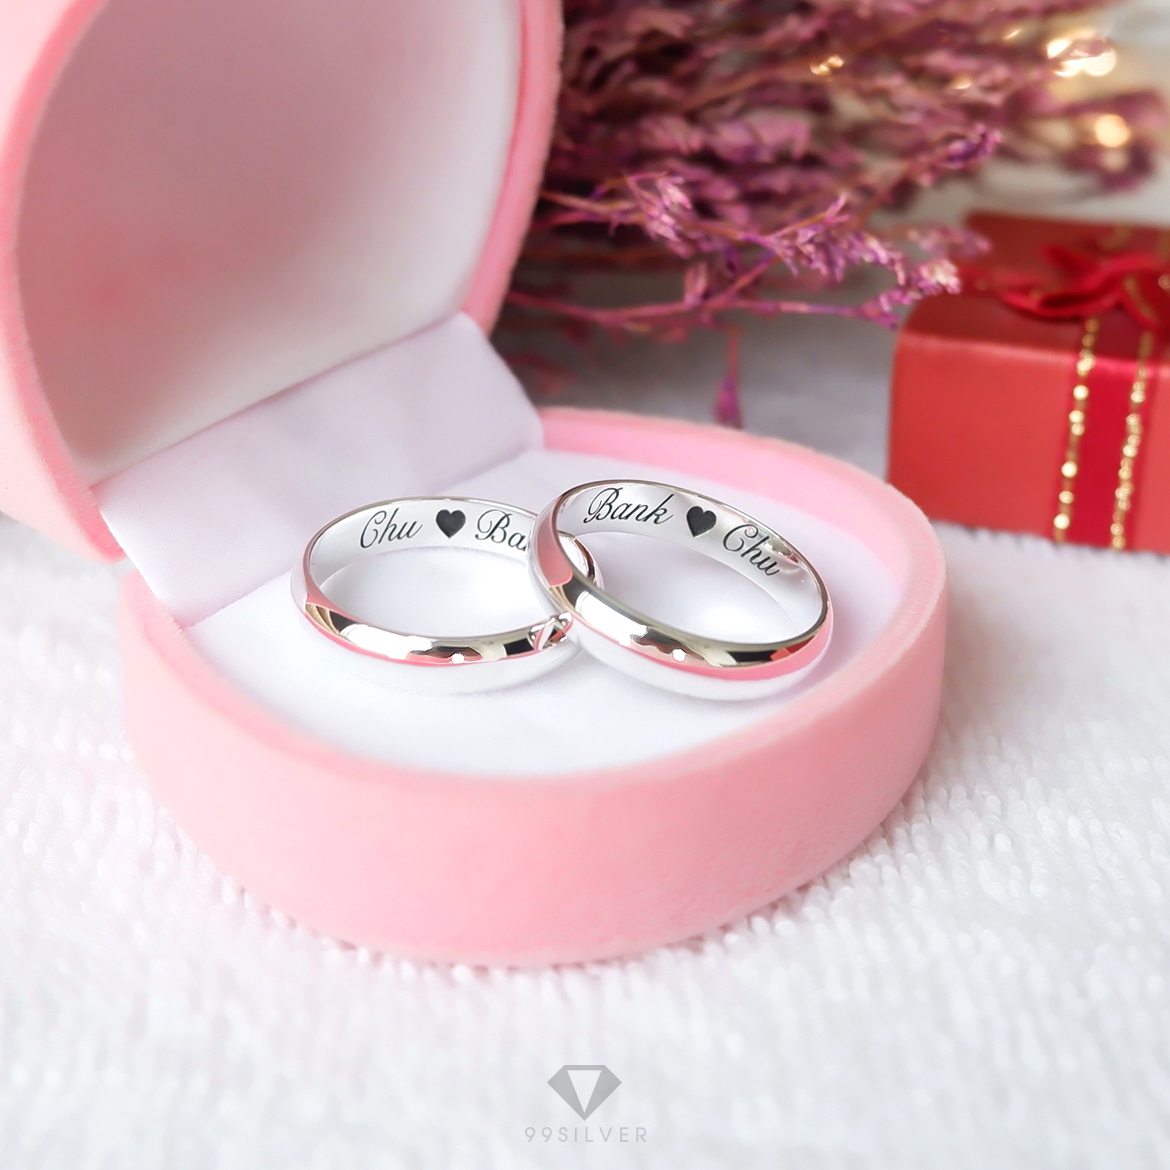 Set แหวนคู่รักสองวง เงินแท้ผิวเงาทรงโค้ง หน้ากว้าง 4 มิลลิเมตร หนา 1.3 มิลลิเมตร